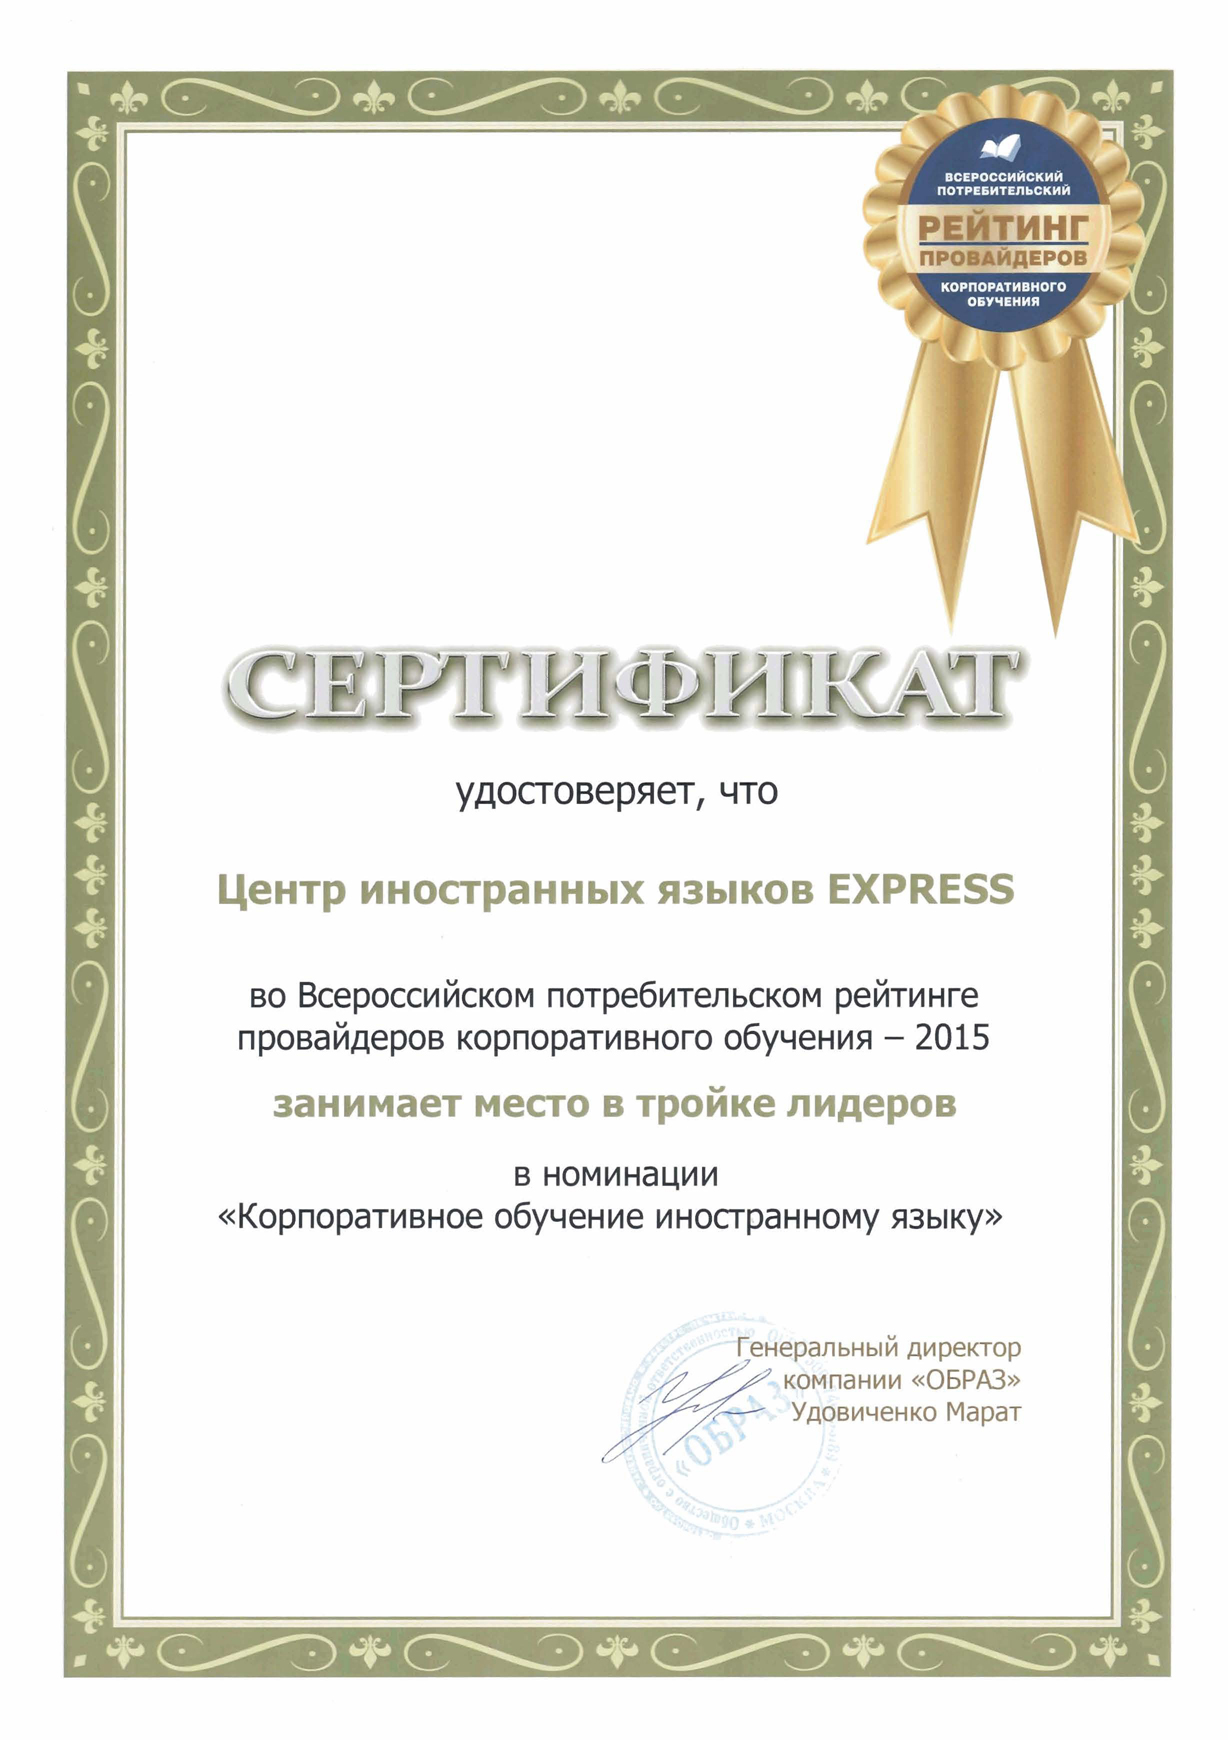 Всероссийский потребительский рейтинг провайдеров корпоративного обучения-2015